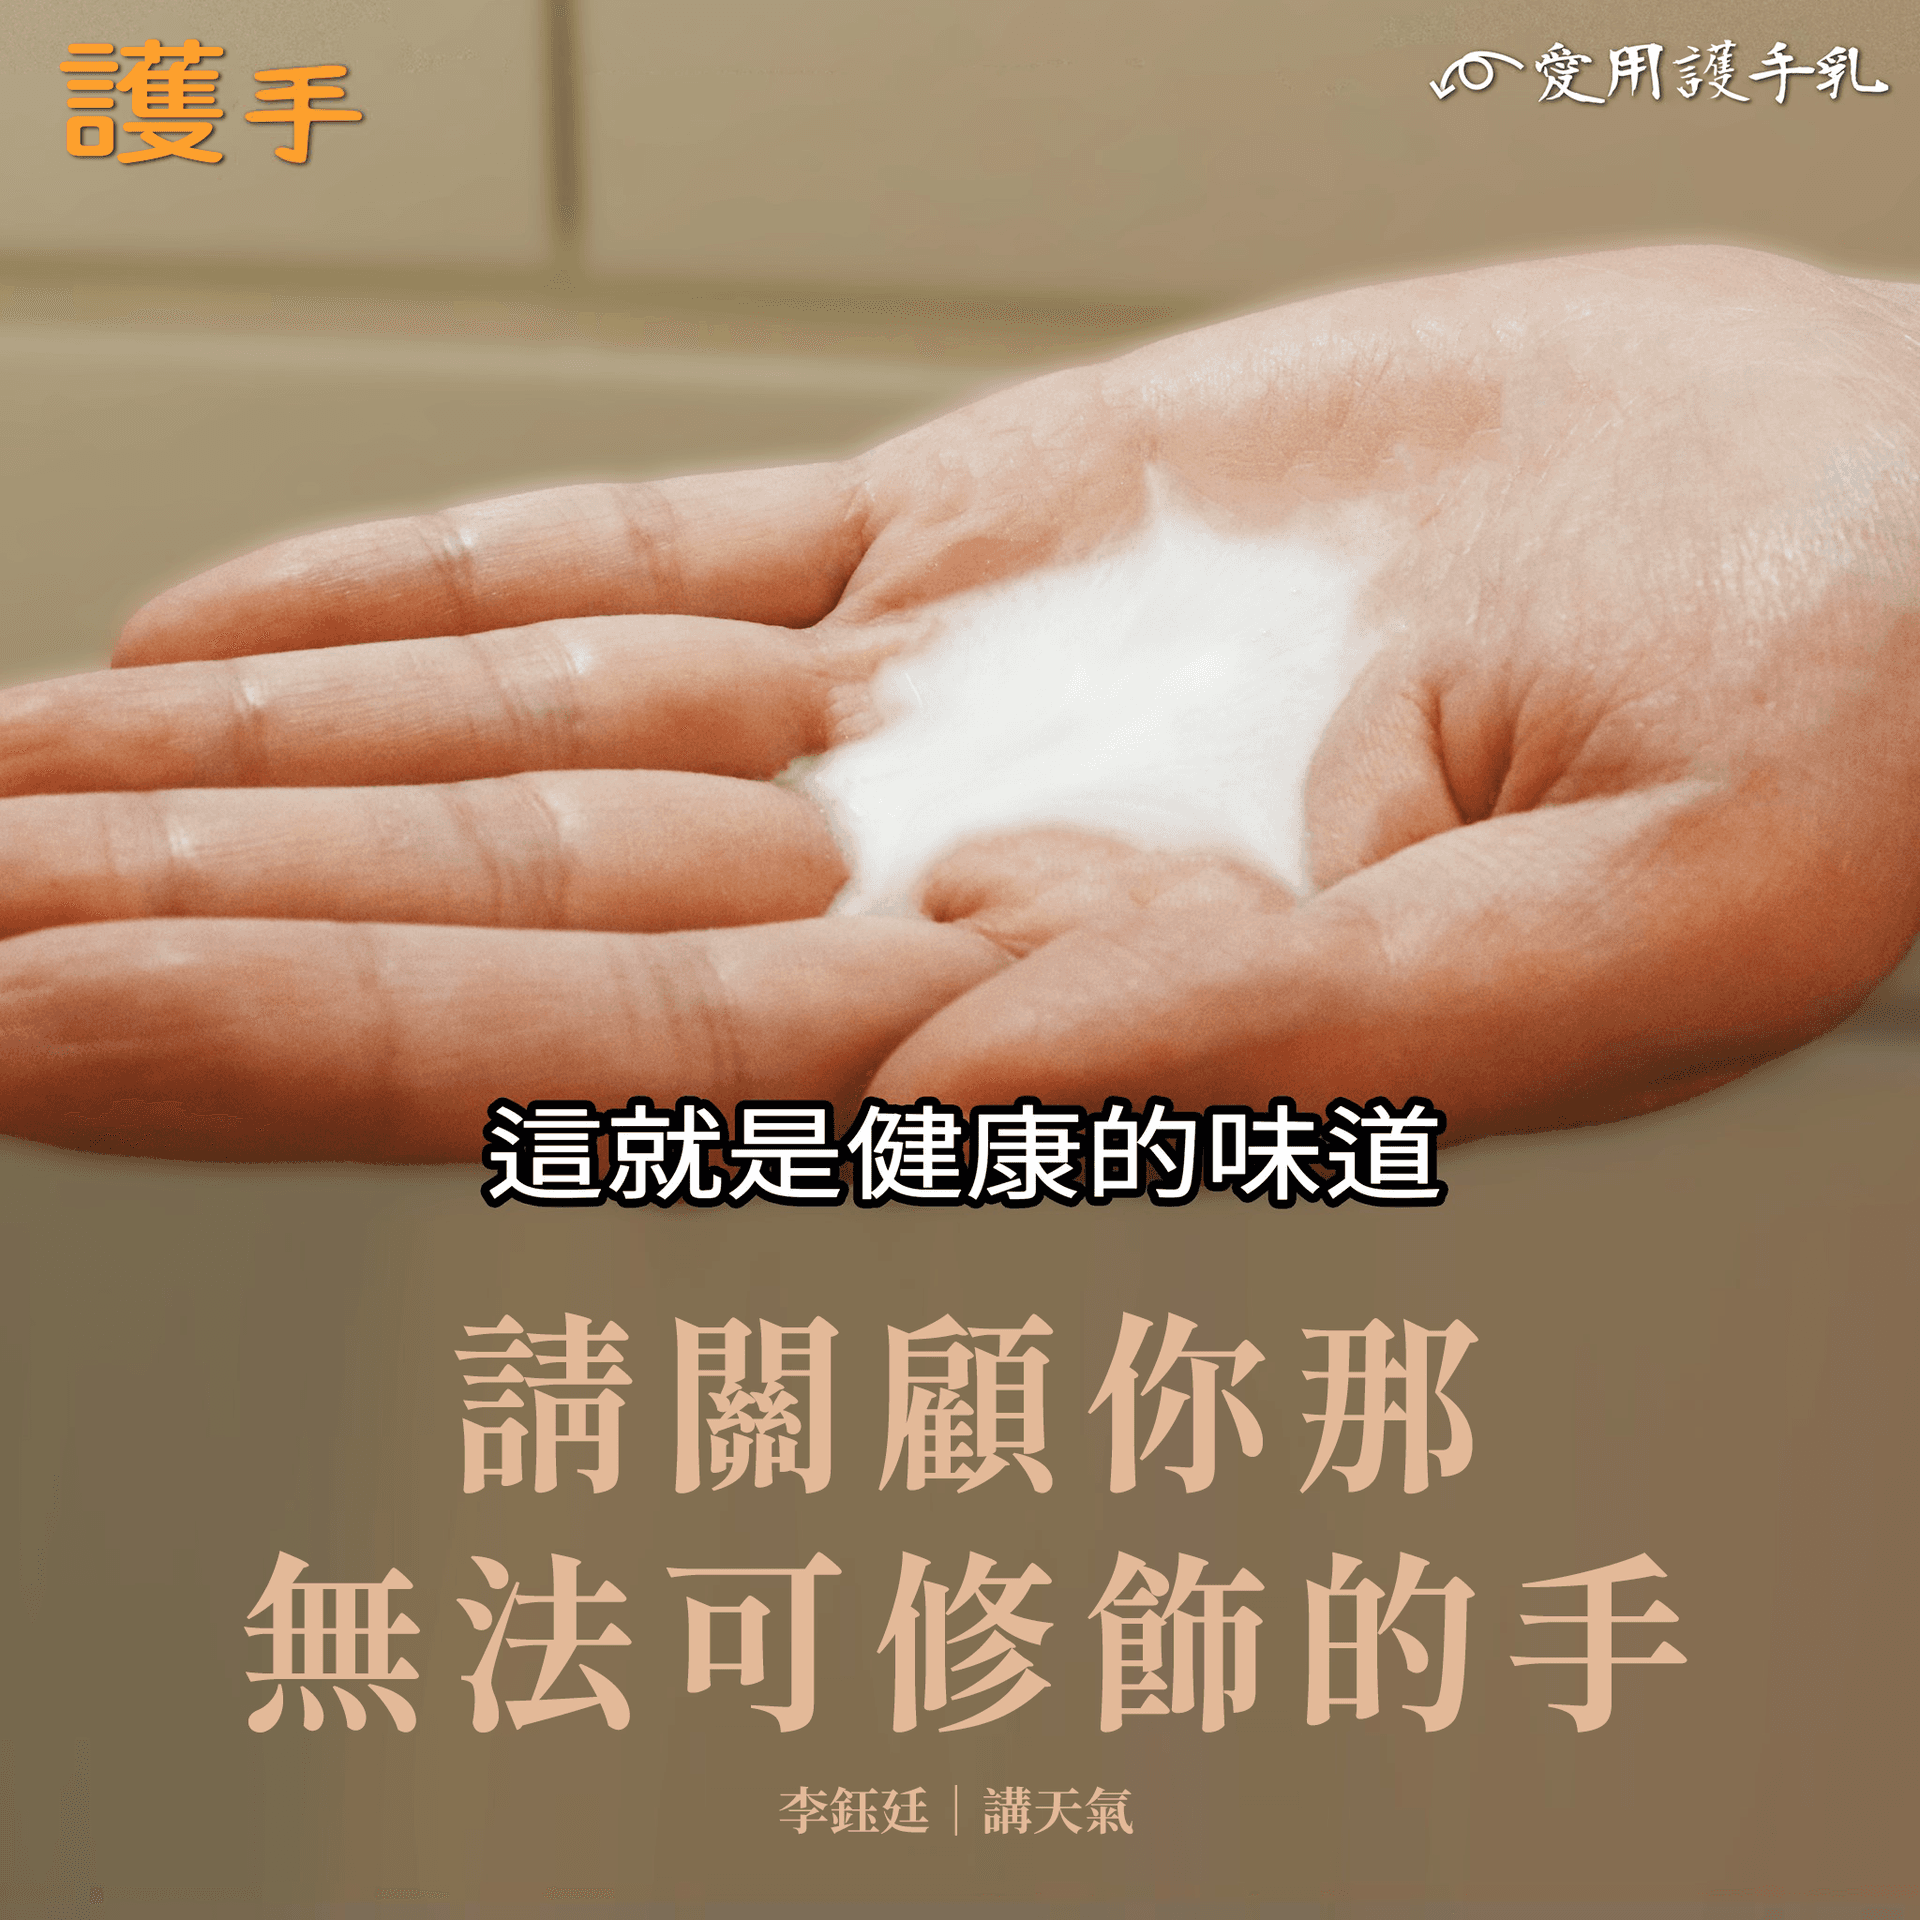 本港今年驚蟄是10年來最Dry，可能最驟忌是未補濕就用手「打小人」，遺下「爆擦的味道」。